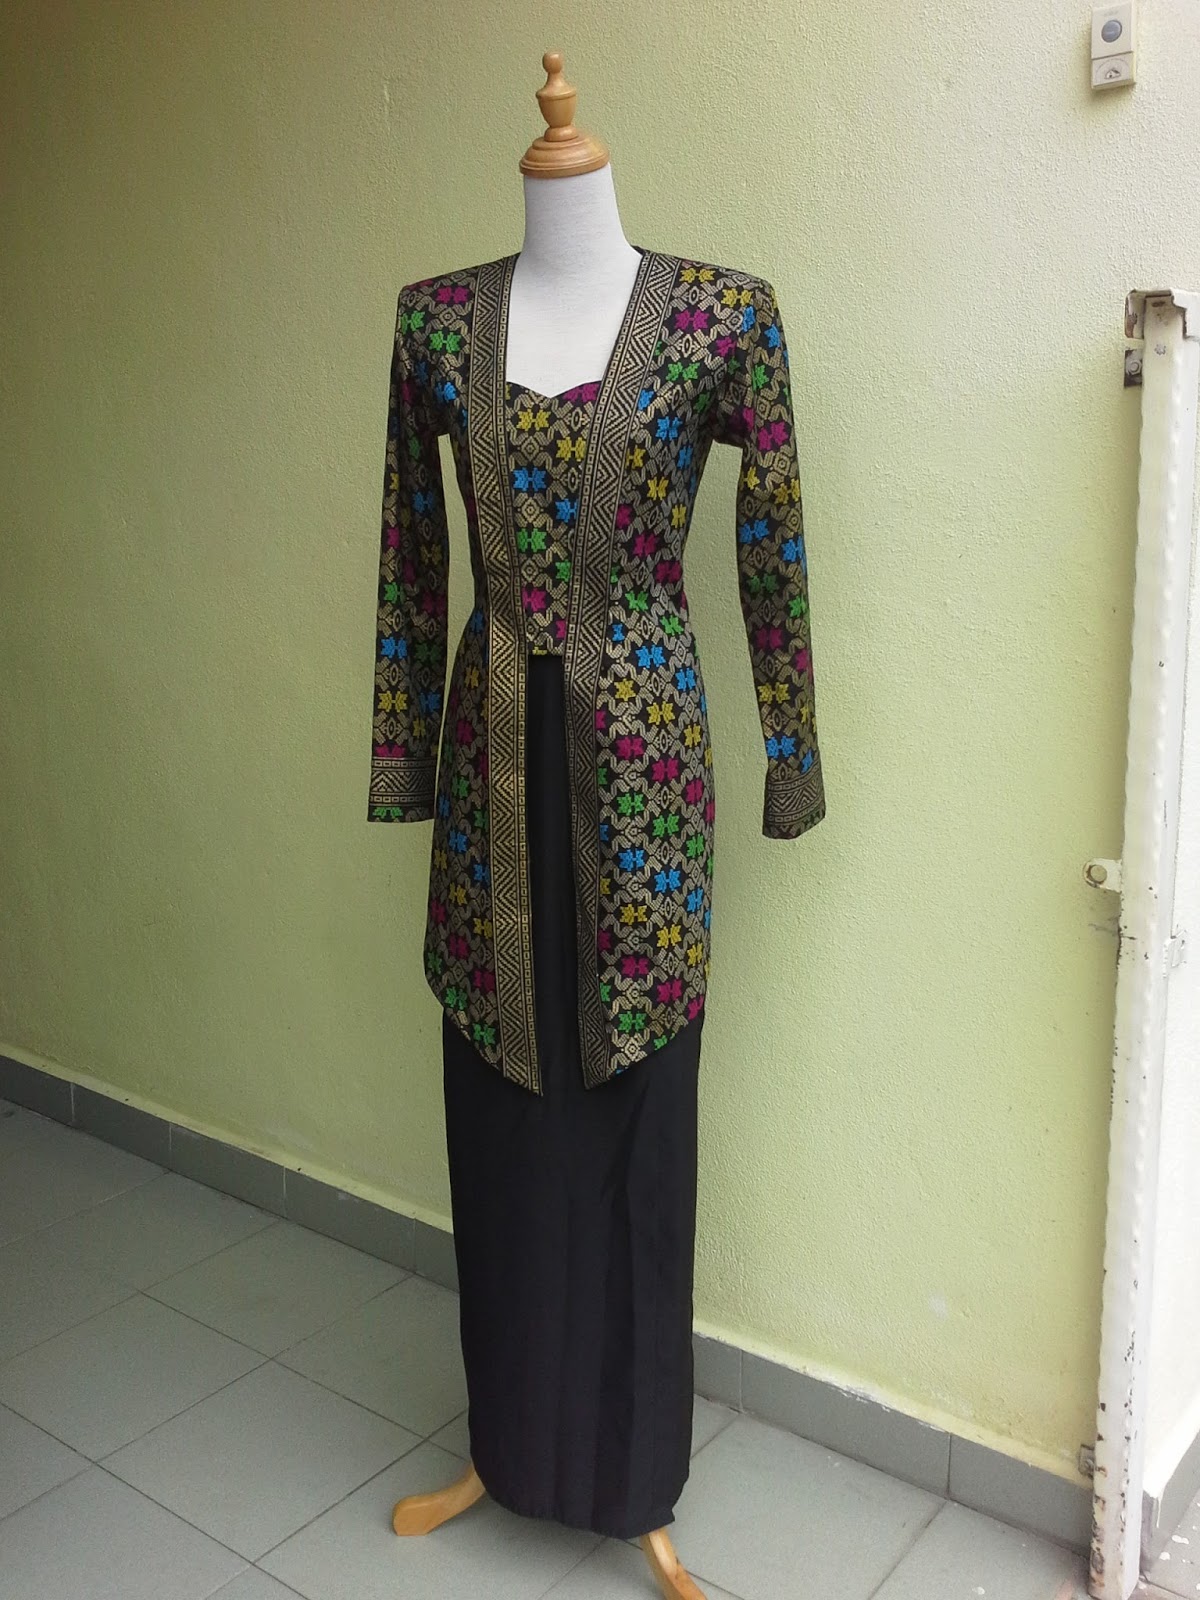 Kedai Kain Maria Fesyen rekaan batik sarawak